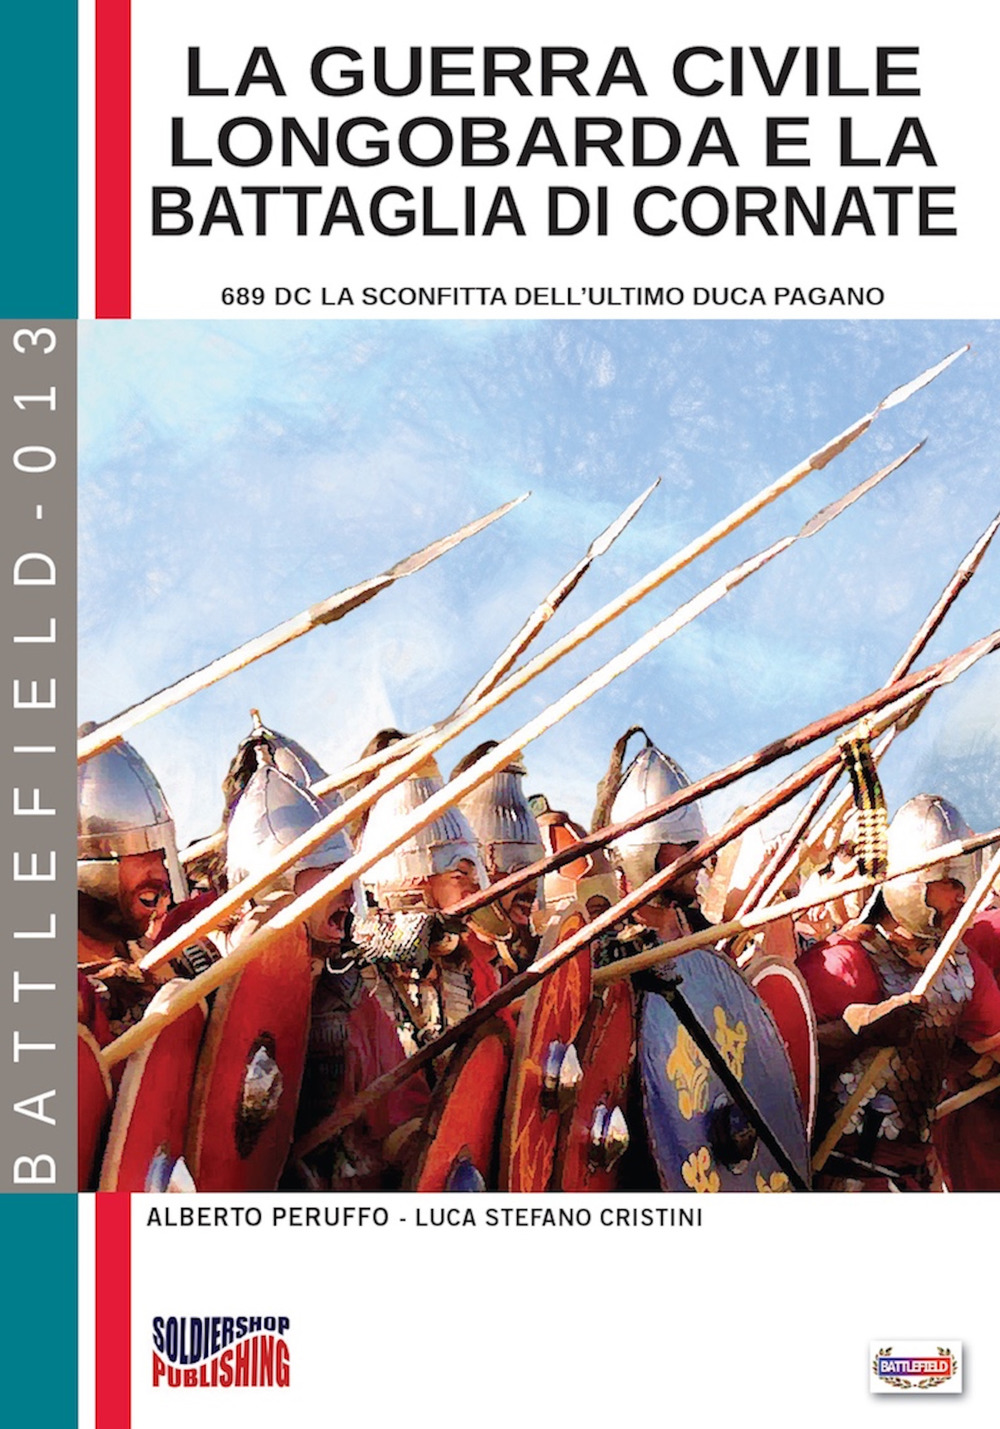 La guerra civile Longobarda e la battaglia di Cornate. 689 DC la sconfitta dell'ultimo duca pagano